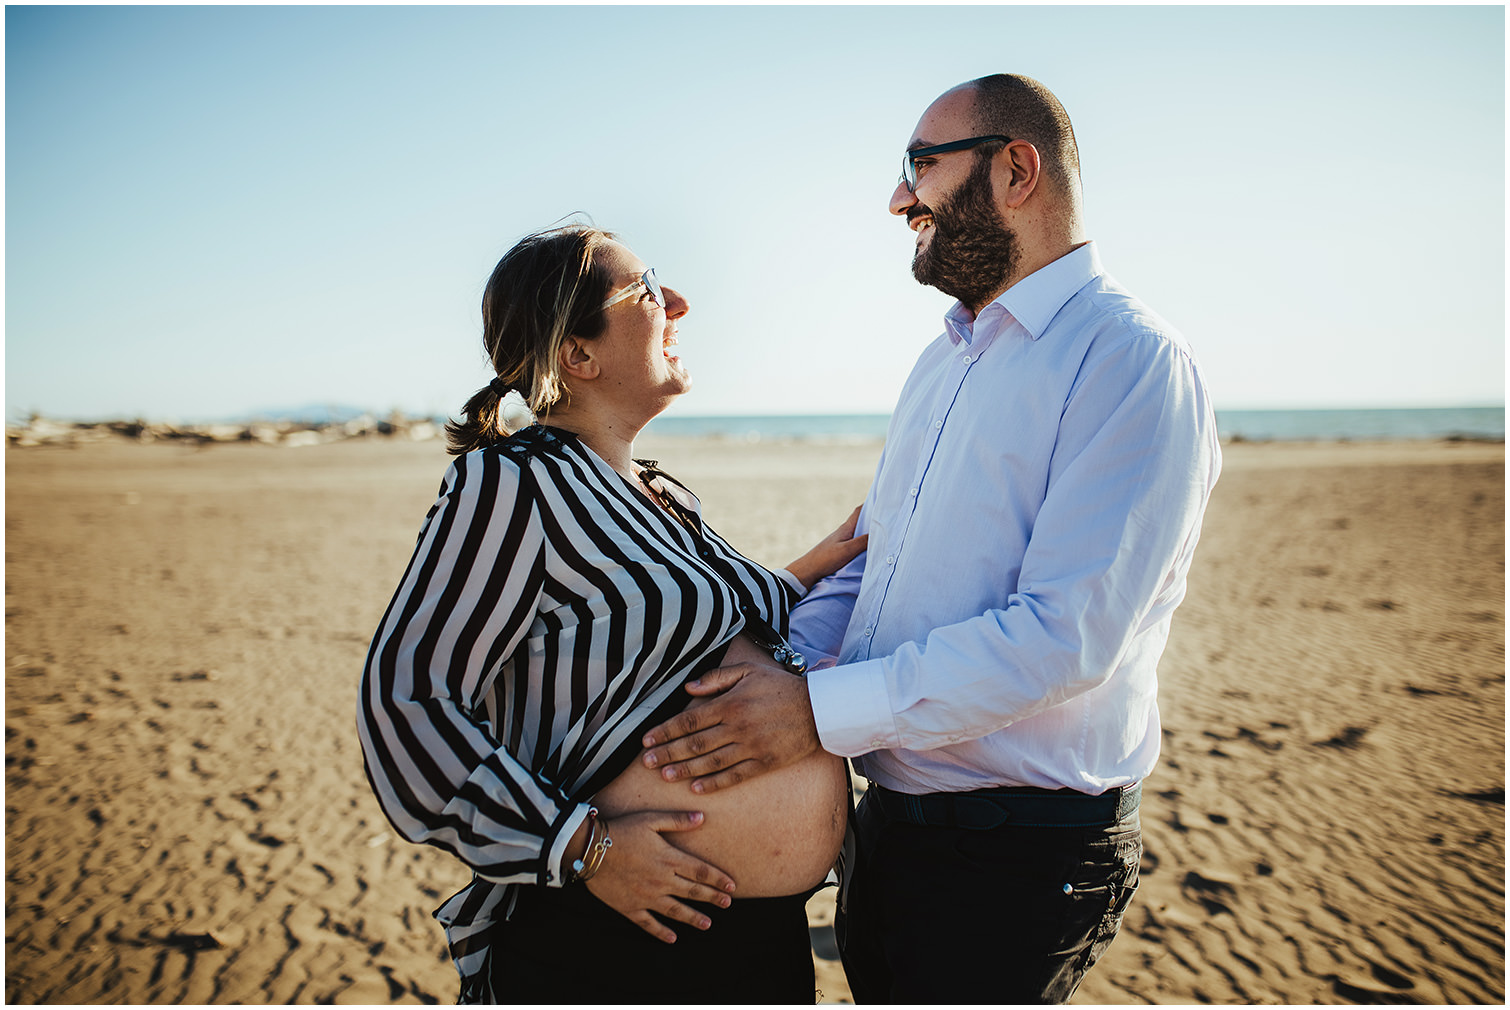 rosi-miche-maternity-session-sara-lorenzoni-fotografia-arezzo-grosseto-fotografo-matrimonio-04